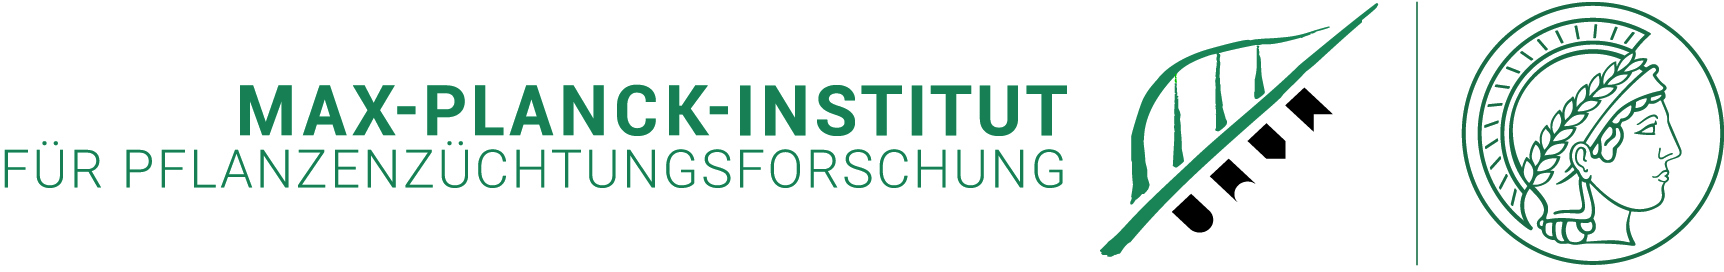 Logo: Max-Planck-Institut für Pflanzenzüchtungsforschung